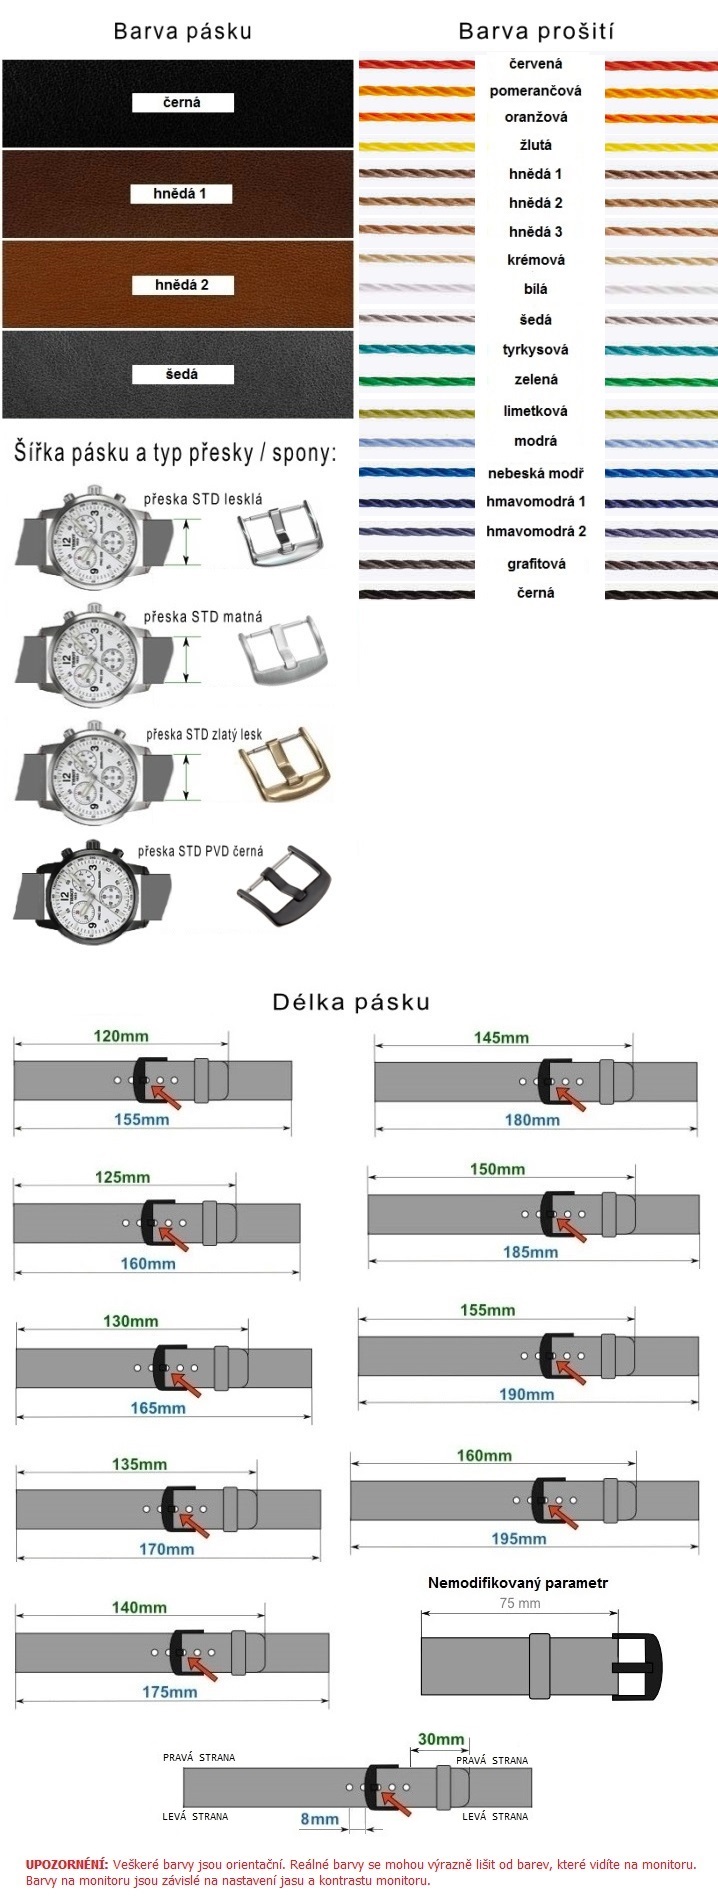 Kožený remienok na hodinky - modifikácie 12 - prešívaný | SHOPE.sk